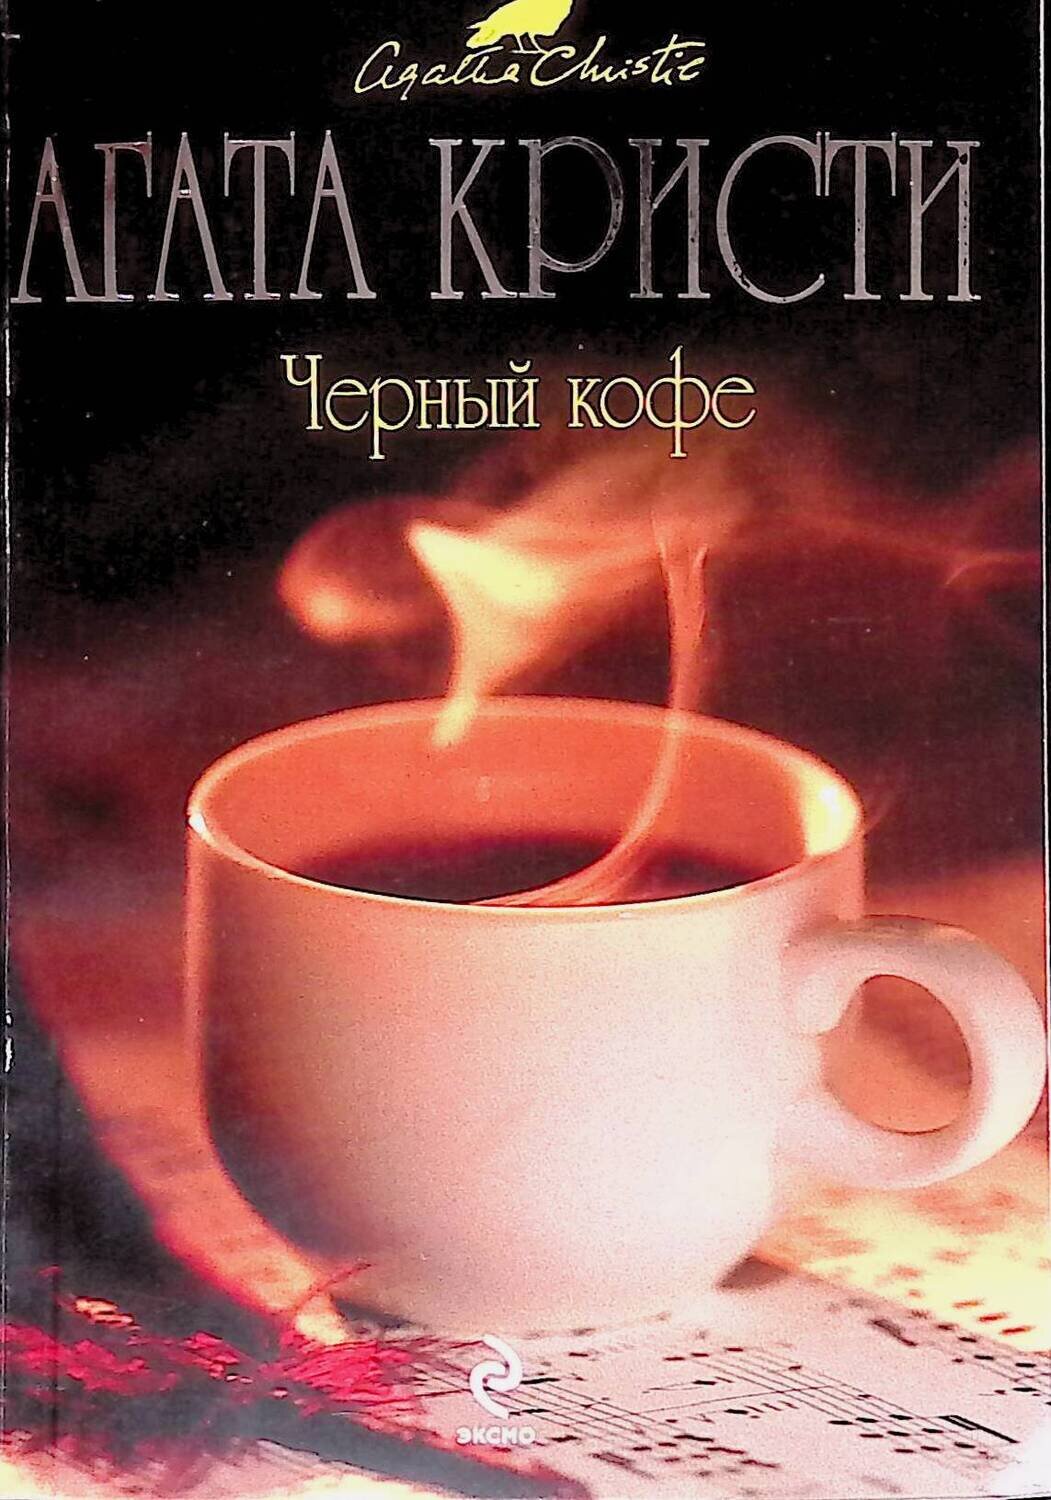 Черный кофе; Кристи Агата